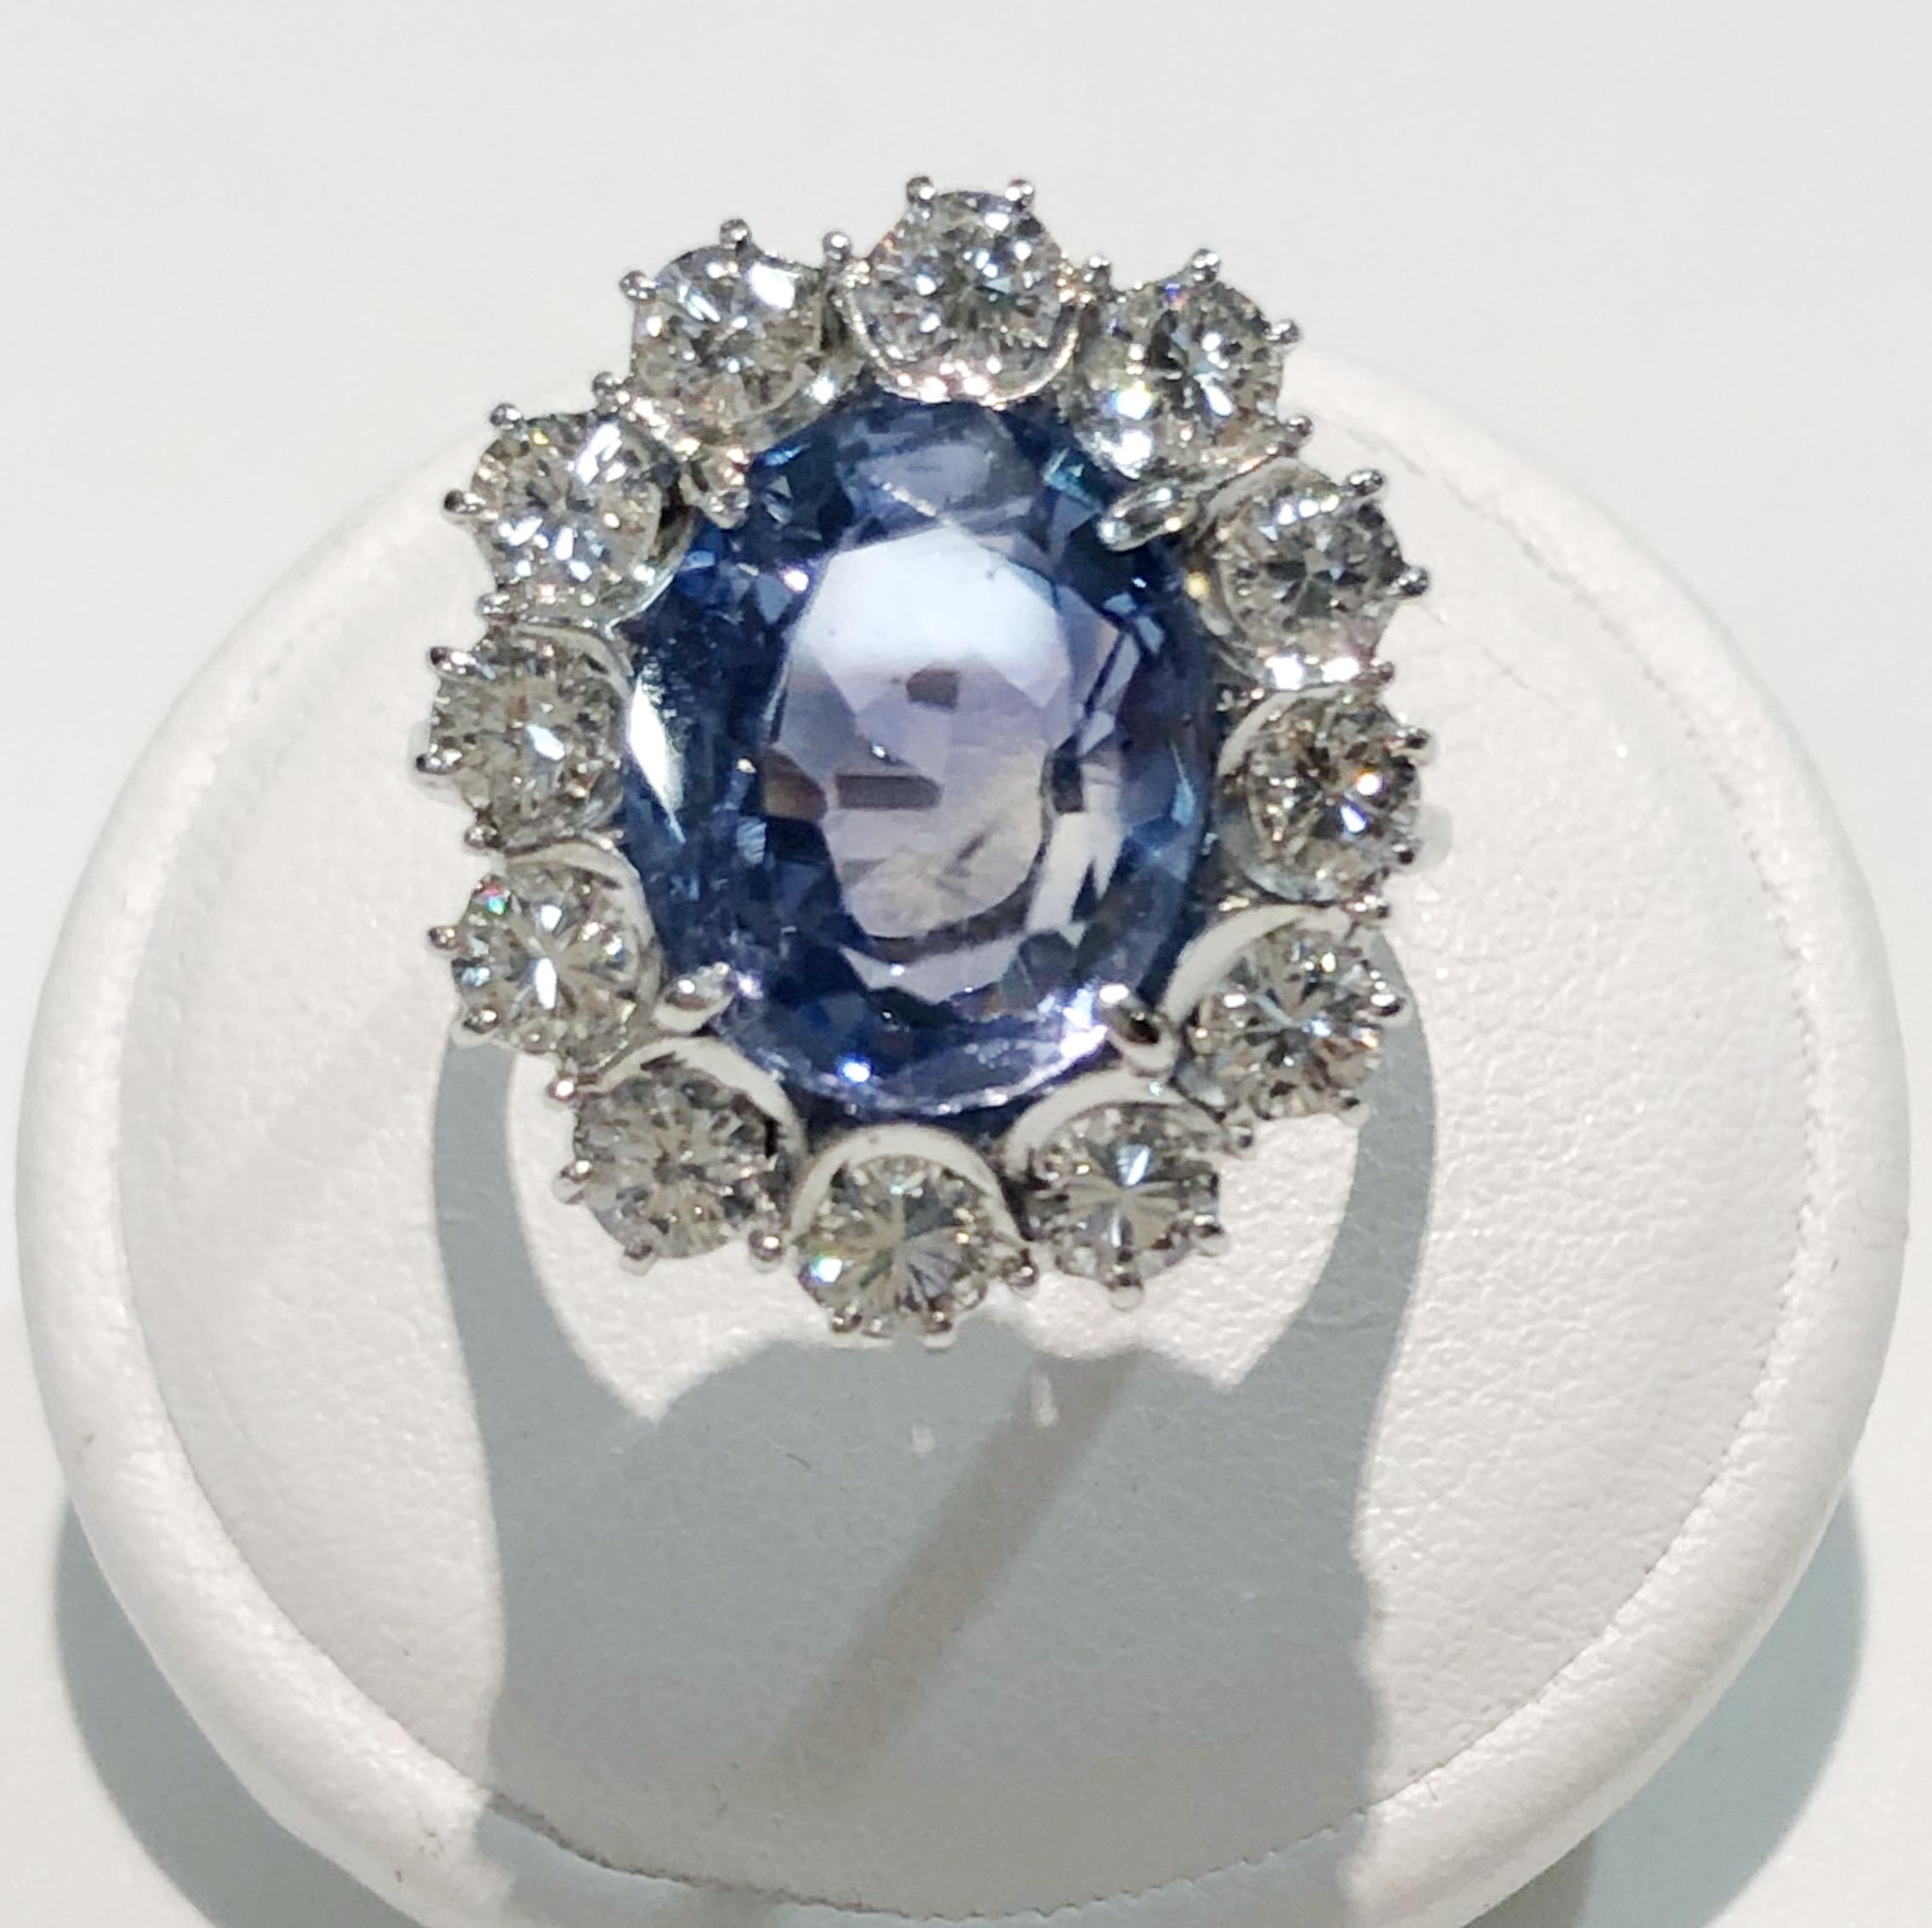 Bague Vintage avec un anneau en or blanc 18 carats, un grand saphir de 5.9 carats, et des diamants brillants sur le contour pour un total de 1.8 carats, Italie 1960s-1970s
Taille de la bague : 6,5